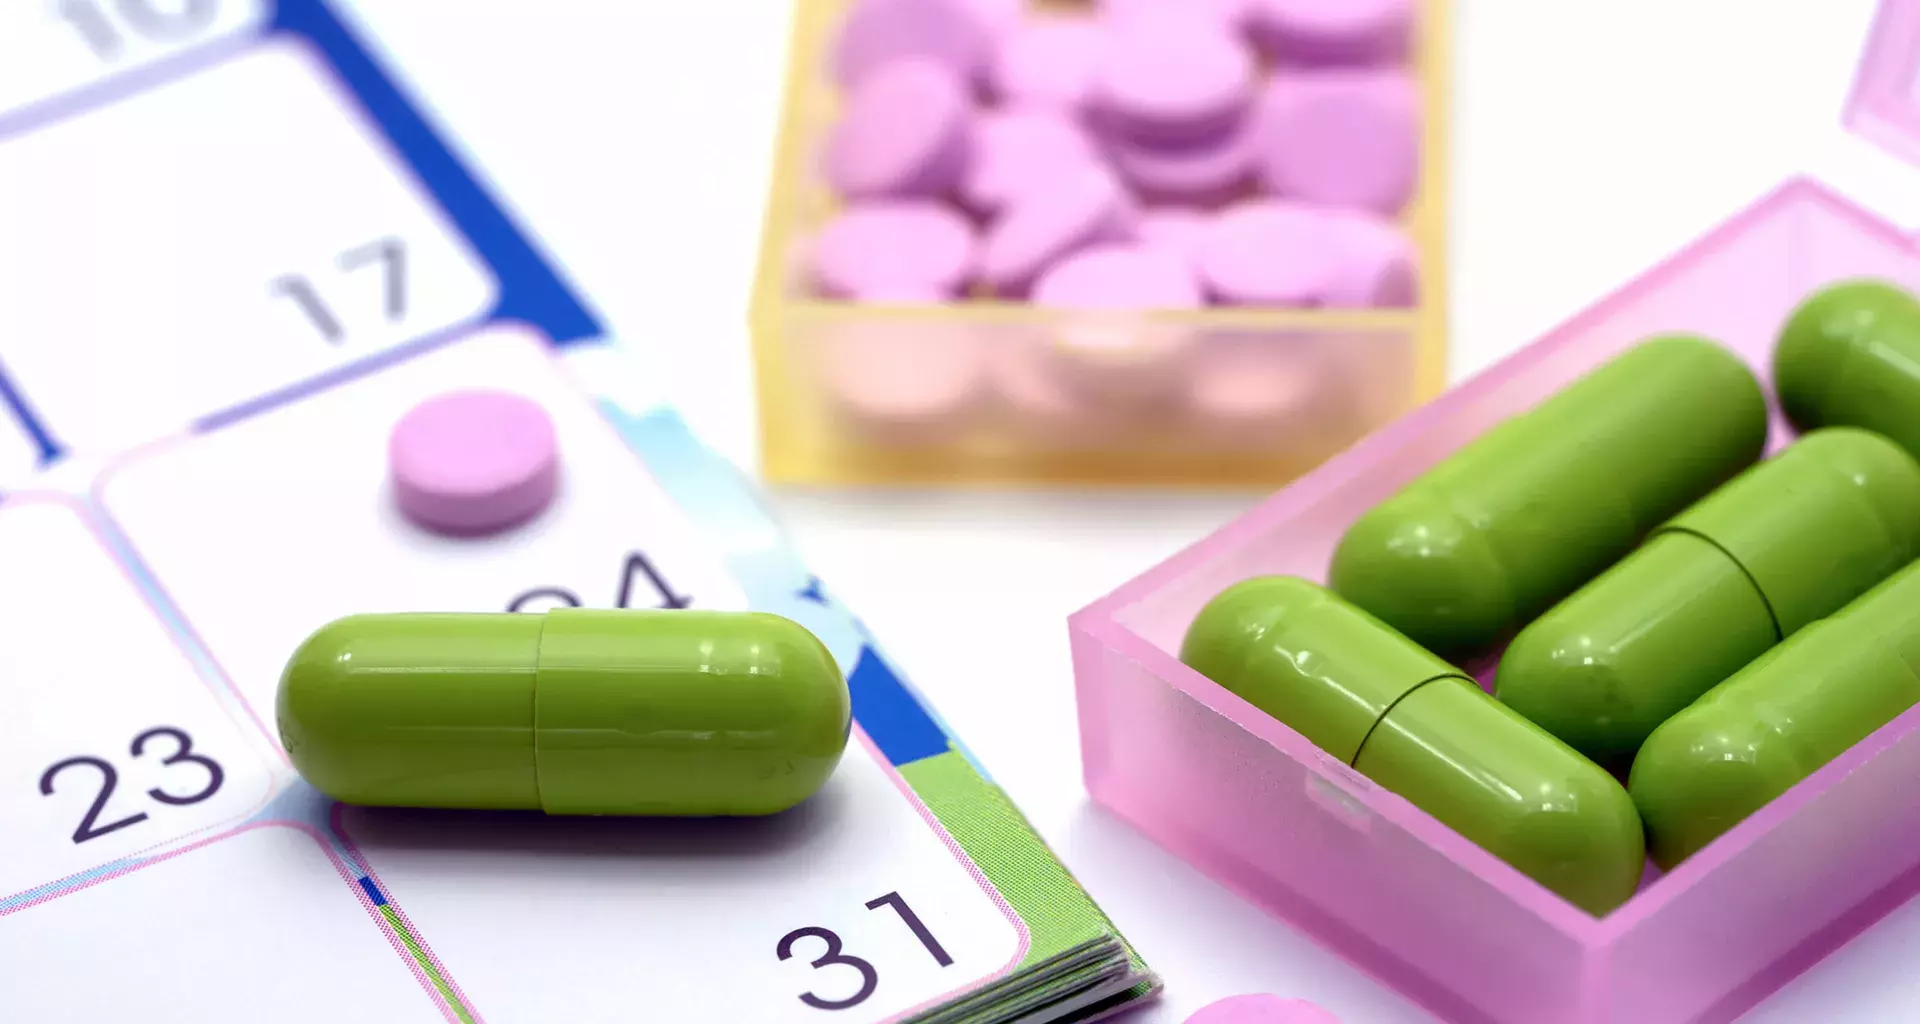 Crean pastillero inteligente que recuerda horario de medicamento